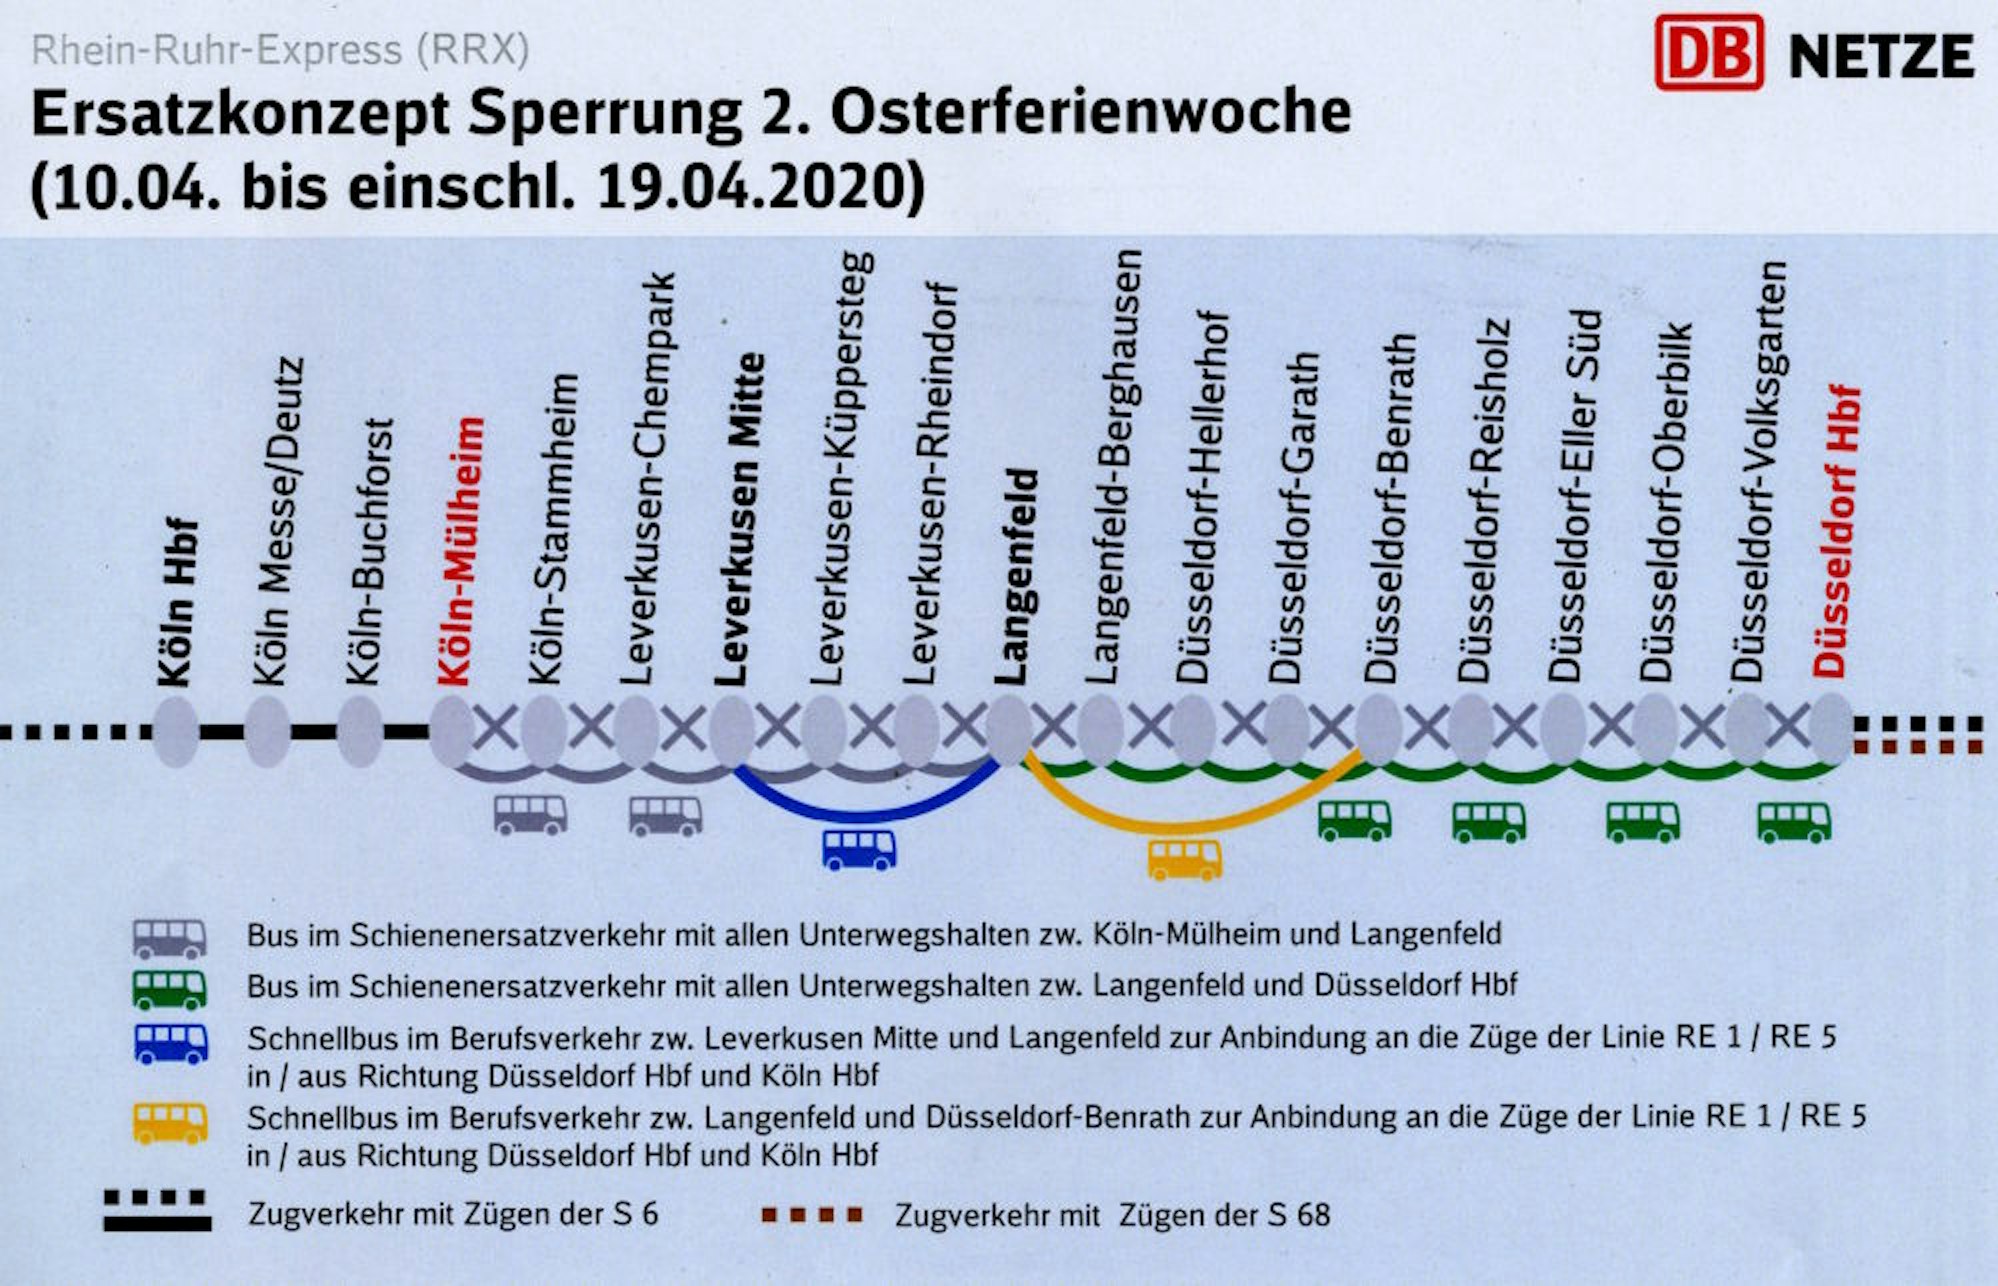 Vor der großen Sperrung 2022/2023 gibt es erstmals bereits in den Osterferien 2020 eine Vollsperrung der Strecke mit Schienenersatzverkehr für alle Stationen und zwei zusätzlichen Schnellbuslinien.